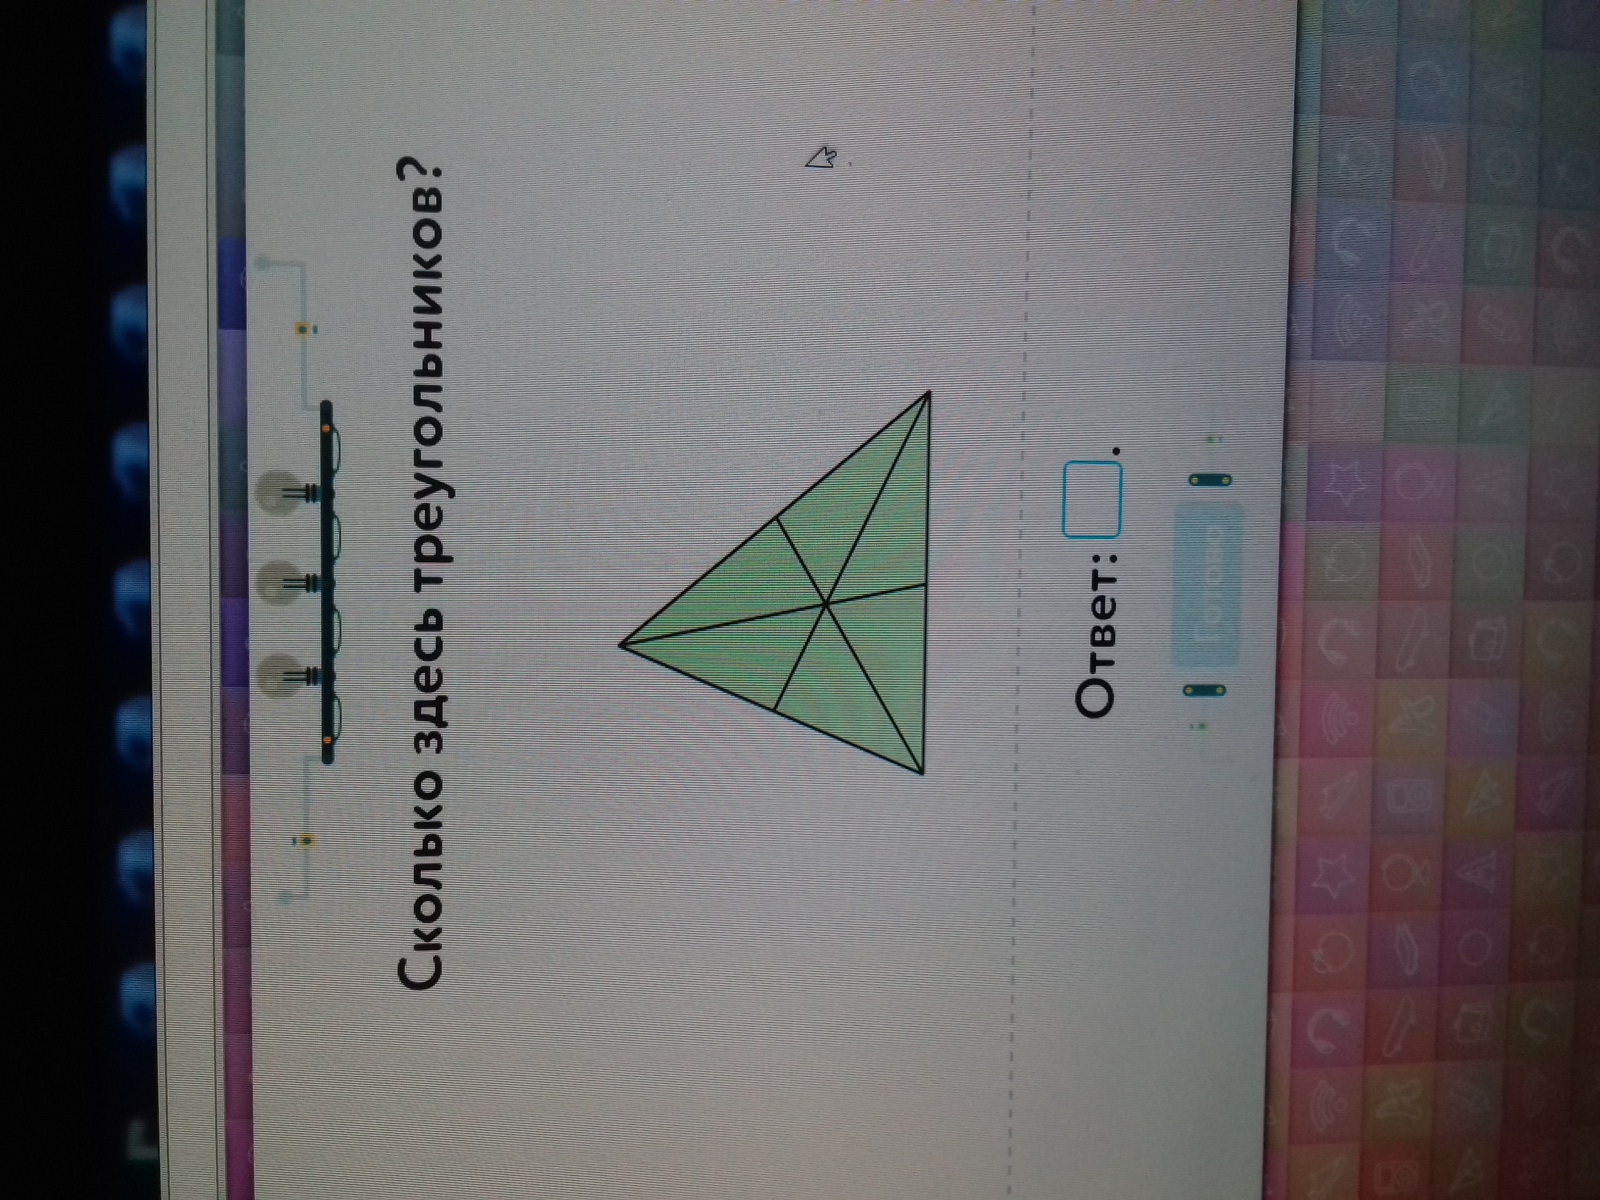 Сколько треугольника учи ру лаборатория. Олько сдесь треугольников. Сколько сдель треугольников. Сколькотздесь треугольников.